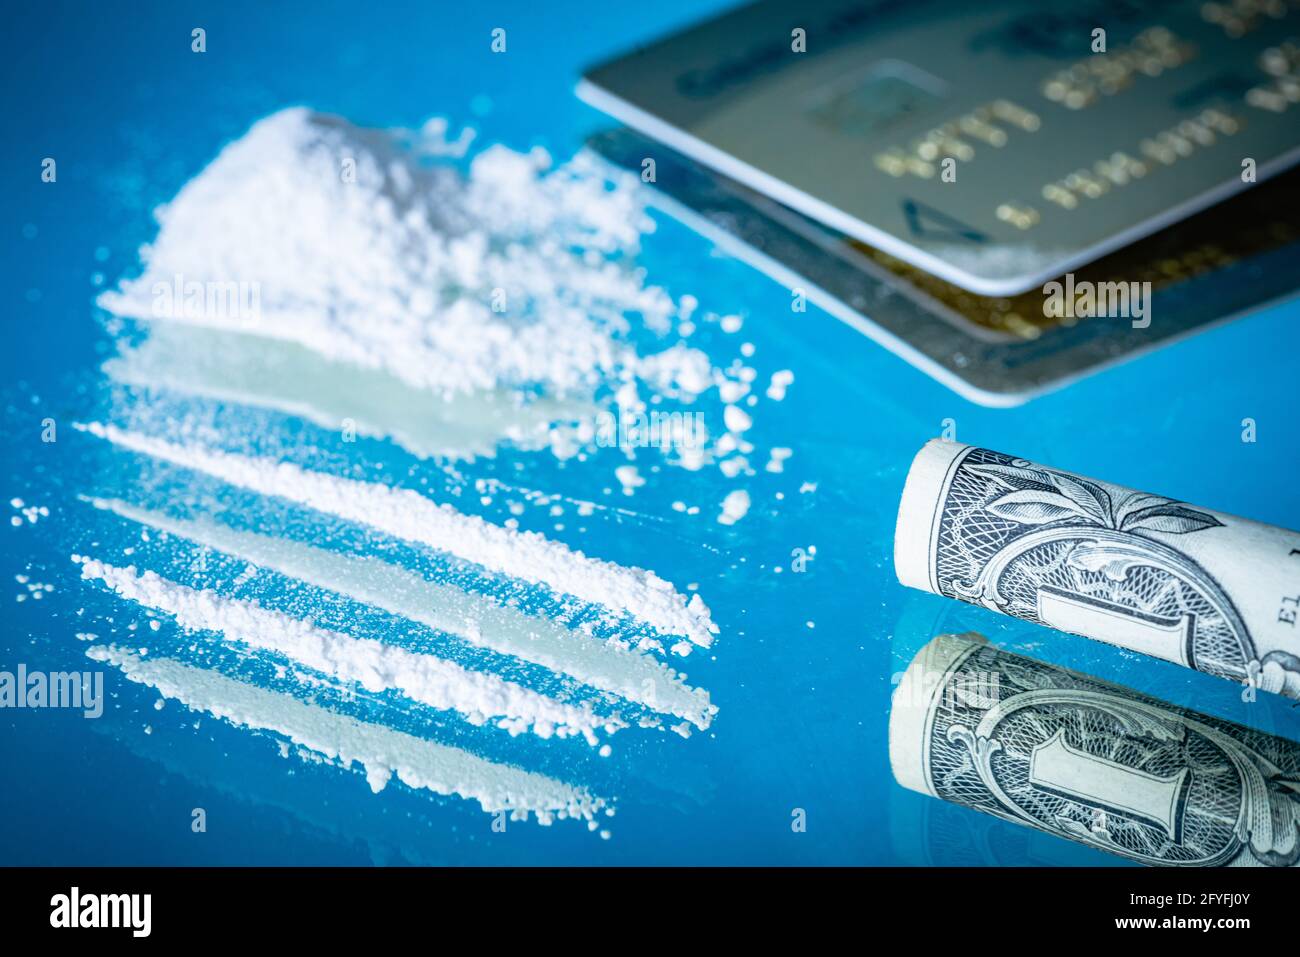 La nota bancaria arrotolata è usata per snort una linea di cocaina. Foto Stock